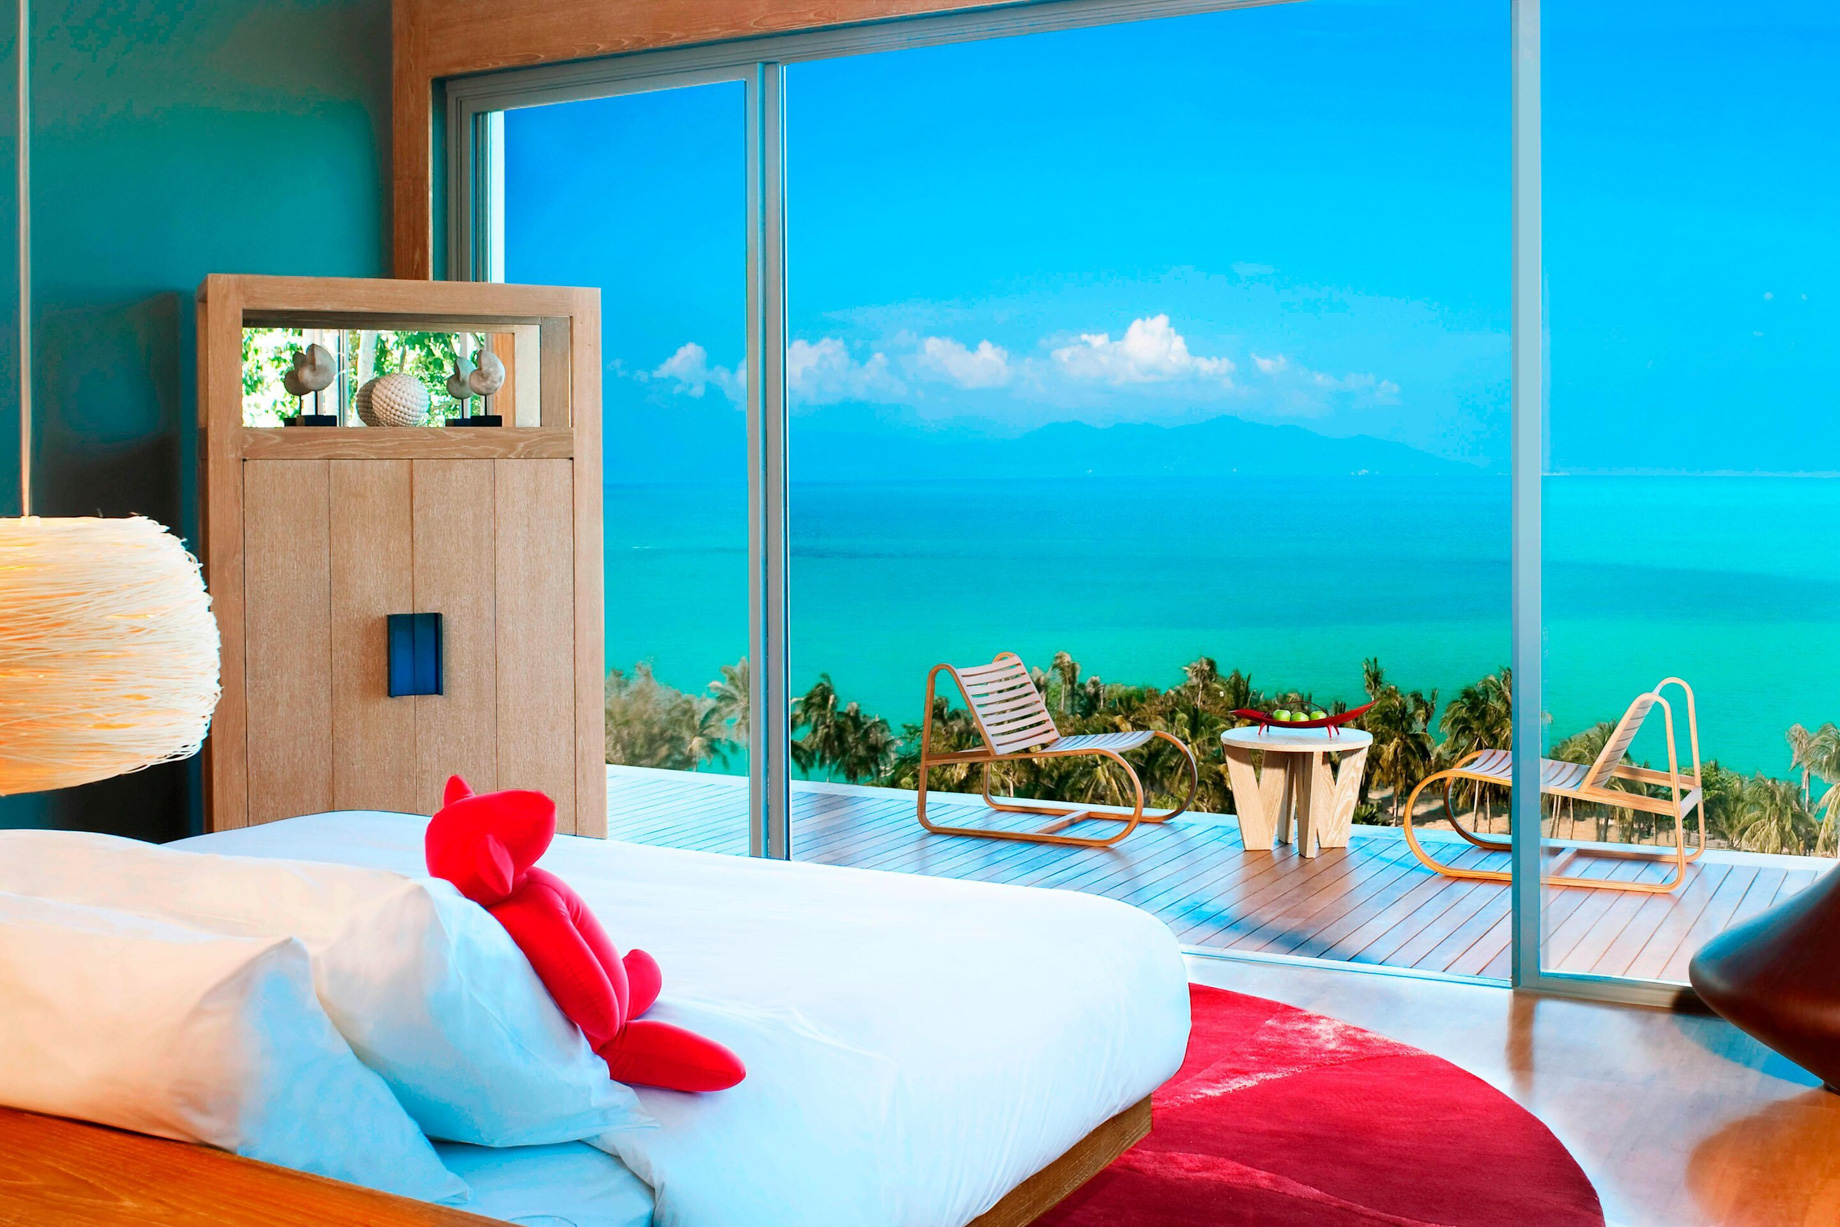 W Koh Samui Resort – Thailand – Residence Villa Bedroom Ocean View